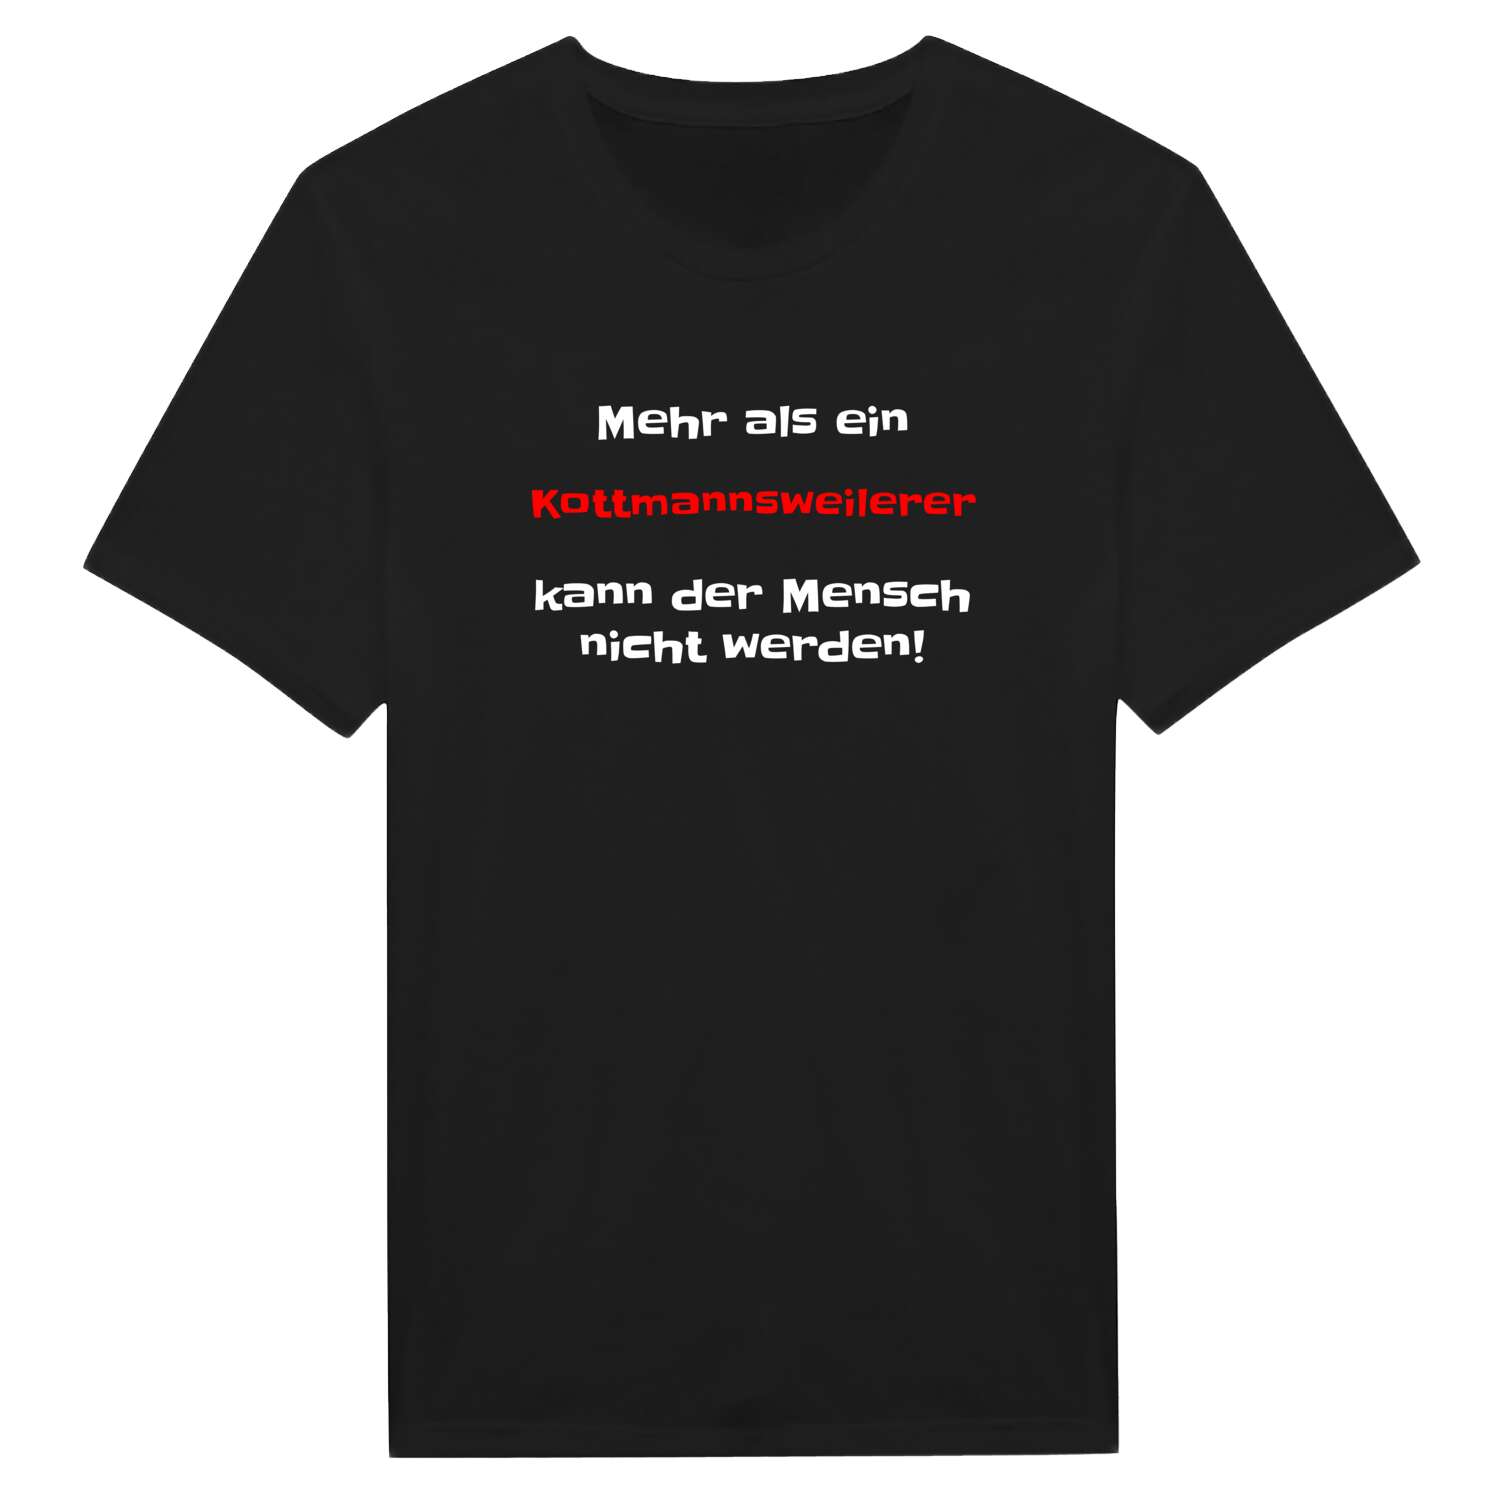 Kottmannsweiler T-Shirt »Mehr als ein«